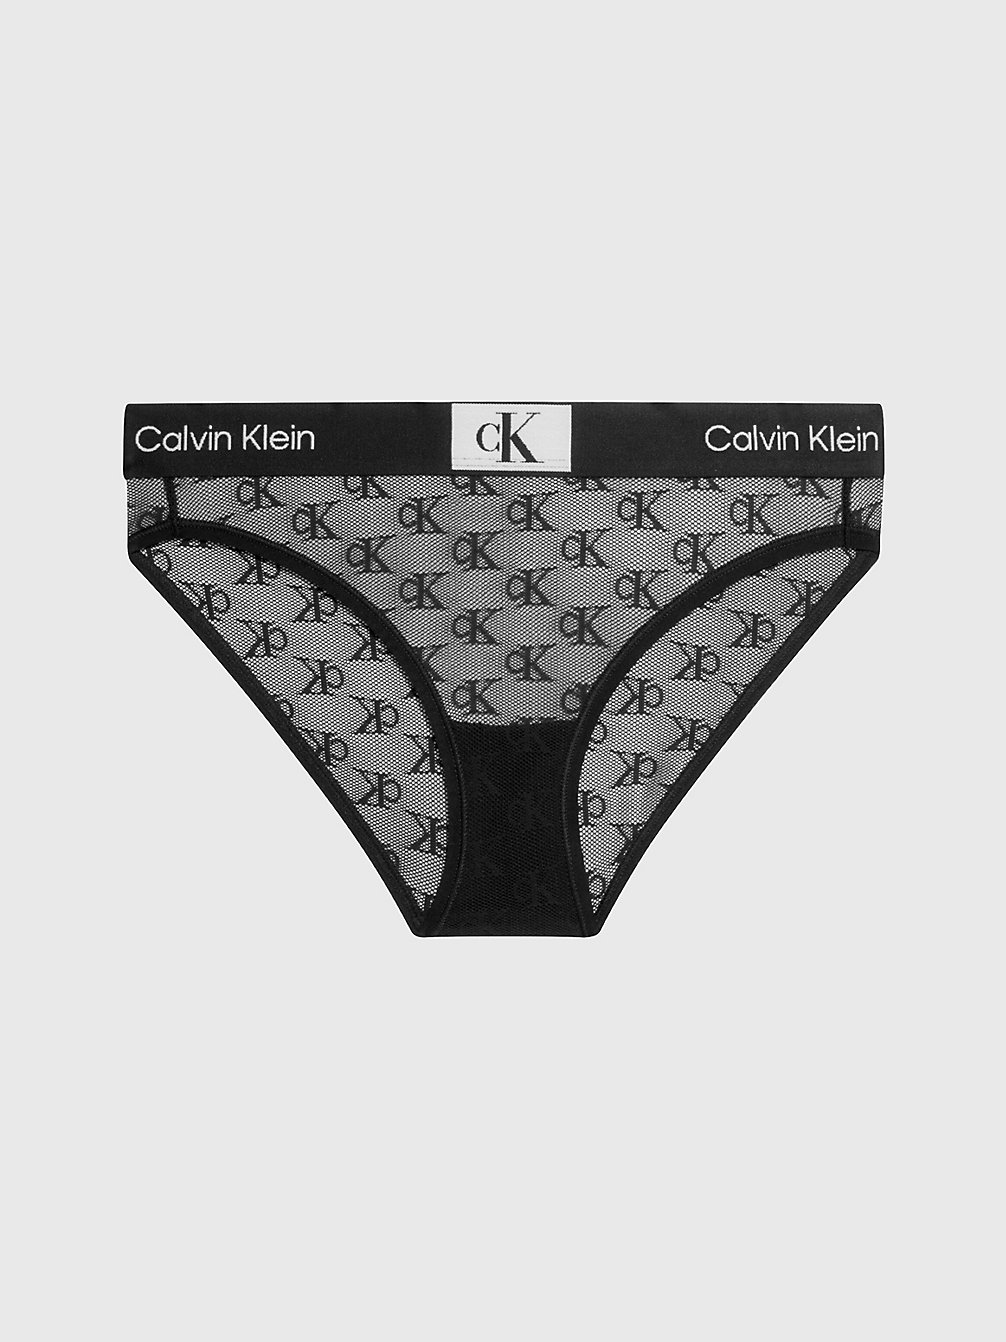 BLACK > Koronkowe Figi - Ck96 > undefined Kobiety - Calvin Klein